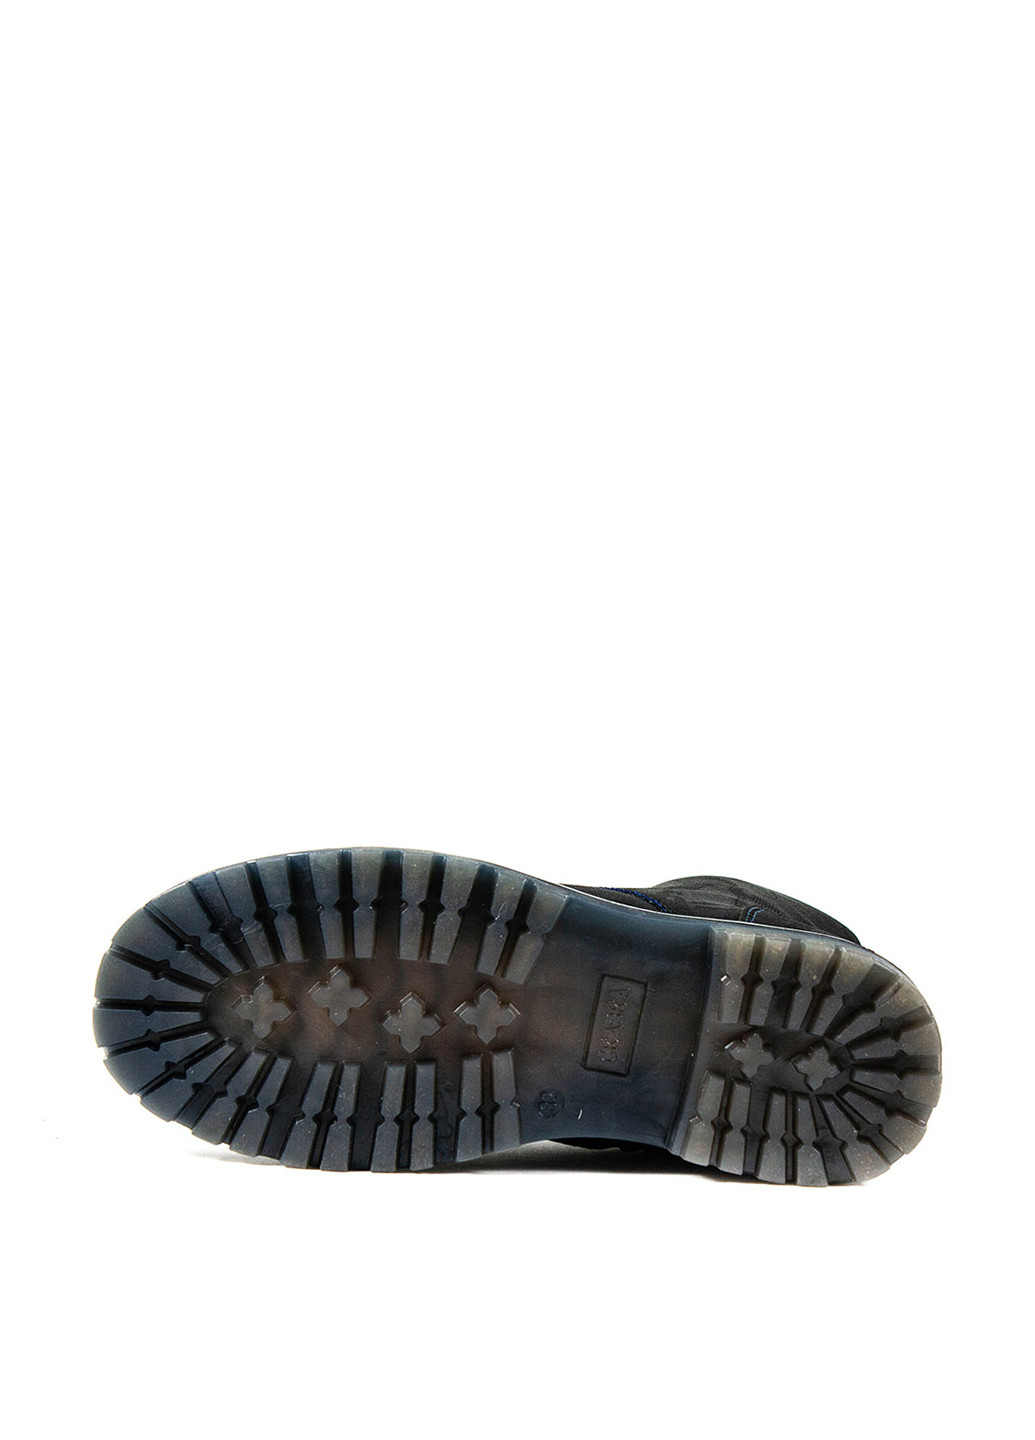 Темно-синие кэжуал осенние ботинки Сказка